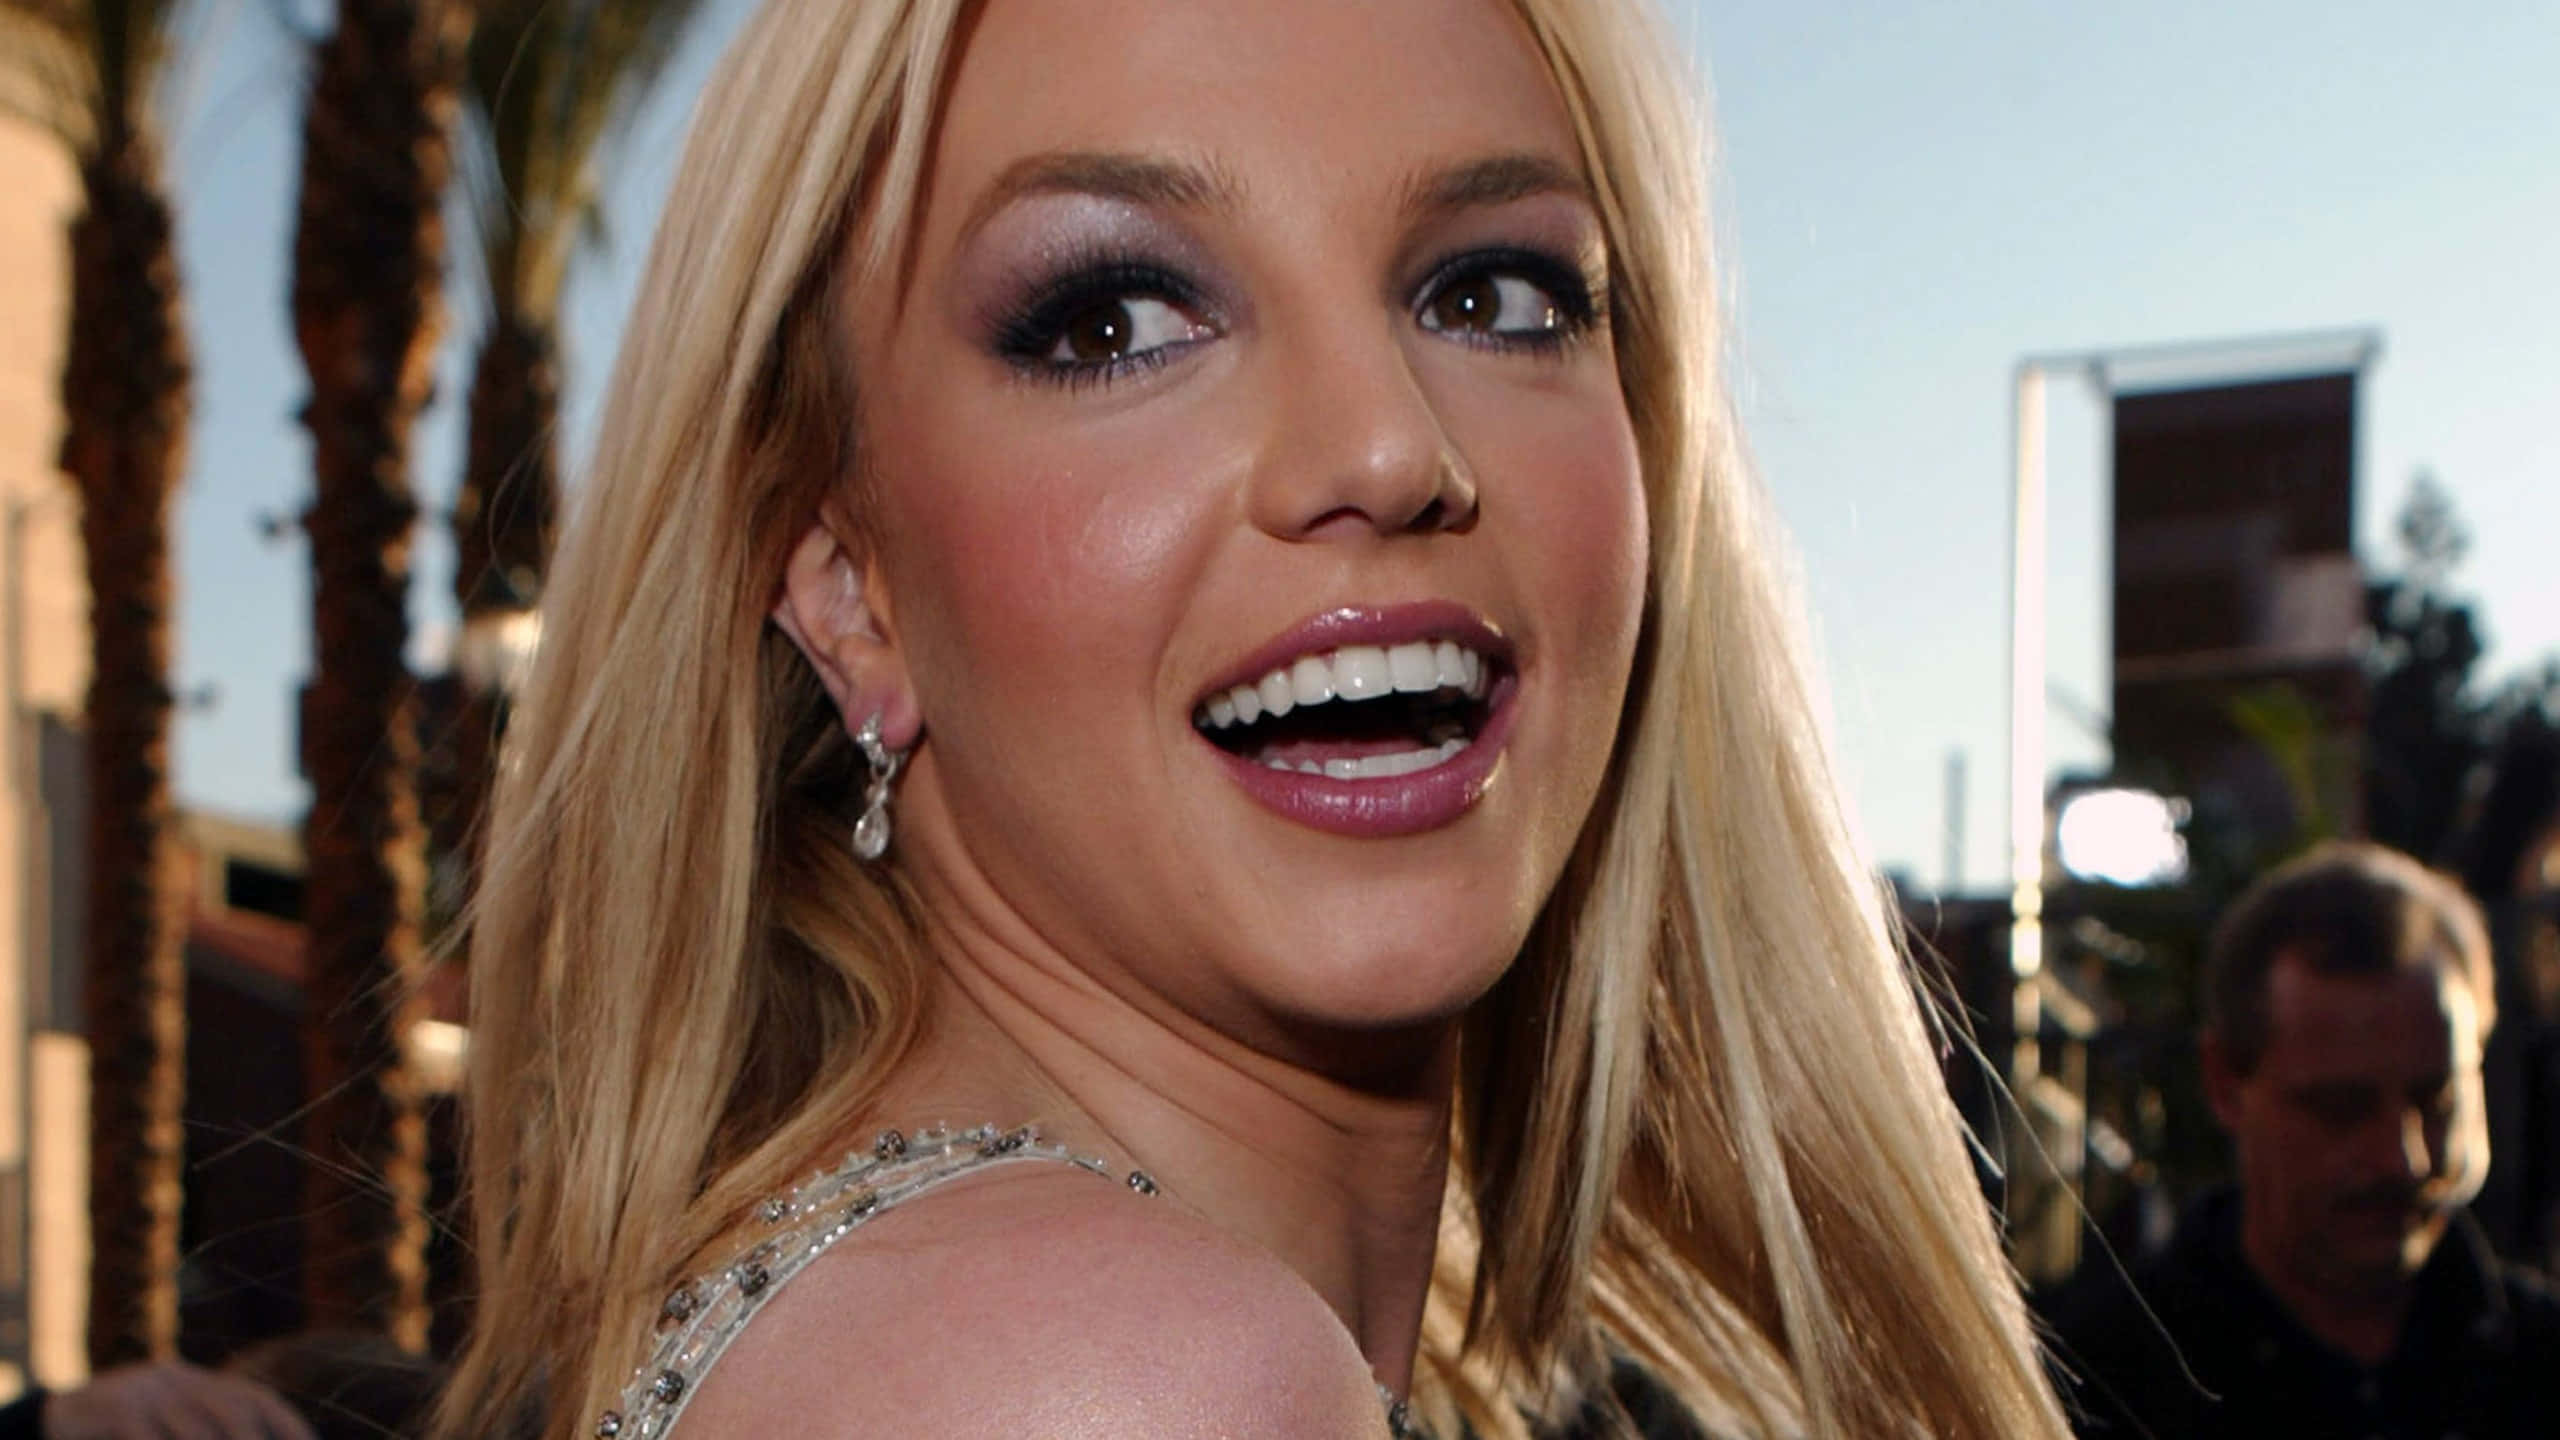 Diepop-sängerin Britney Spears Sieht Strahlend Aus In Ihrem Weißen Kleid.